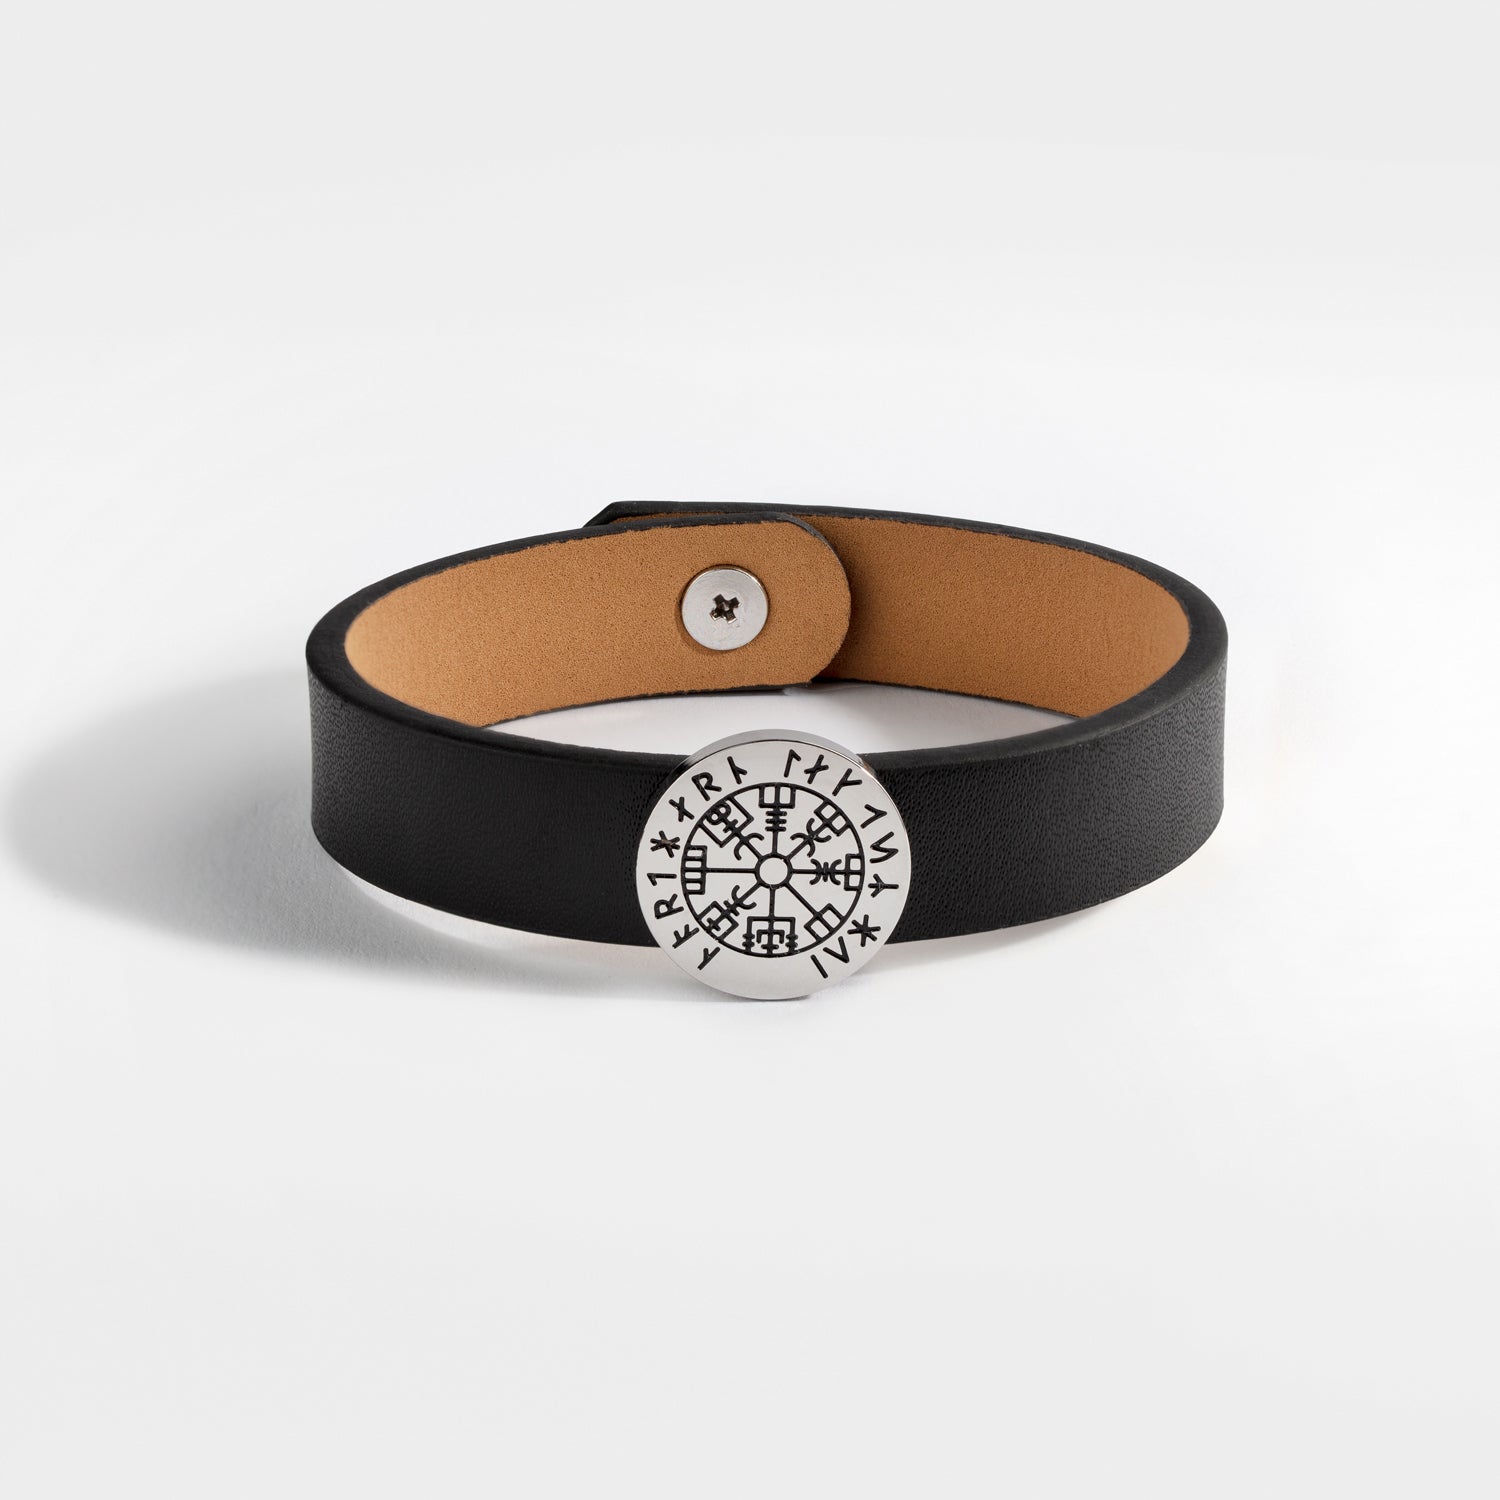 NL Vegvisir leather bracelet - Silver-toned